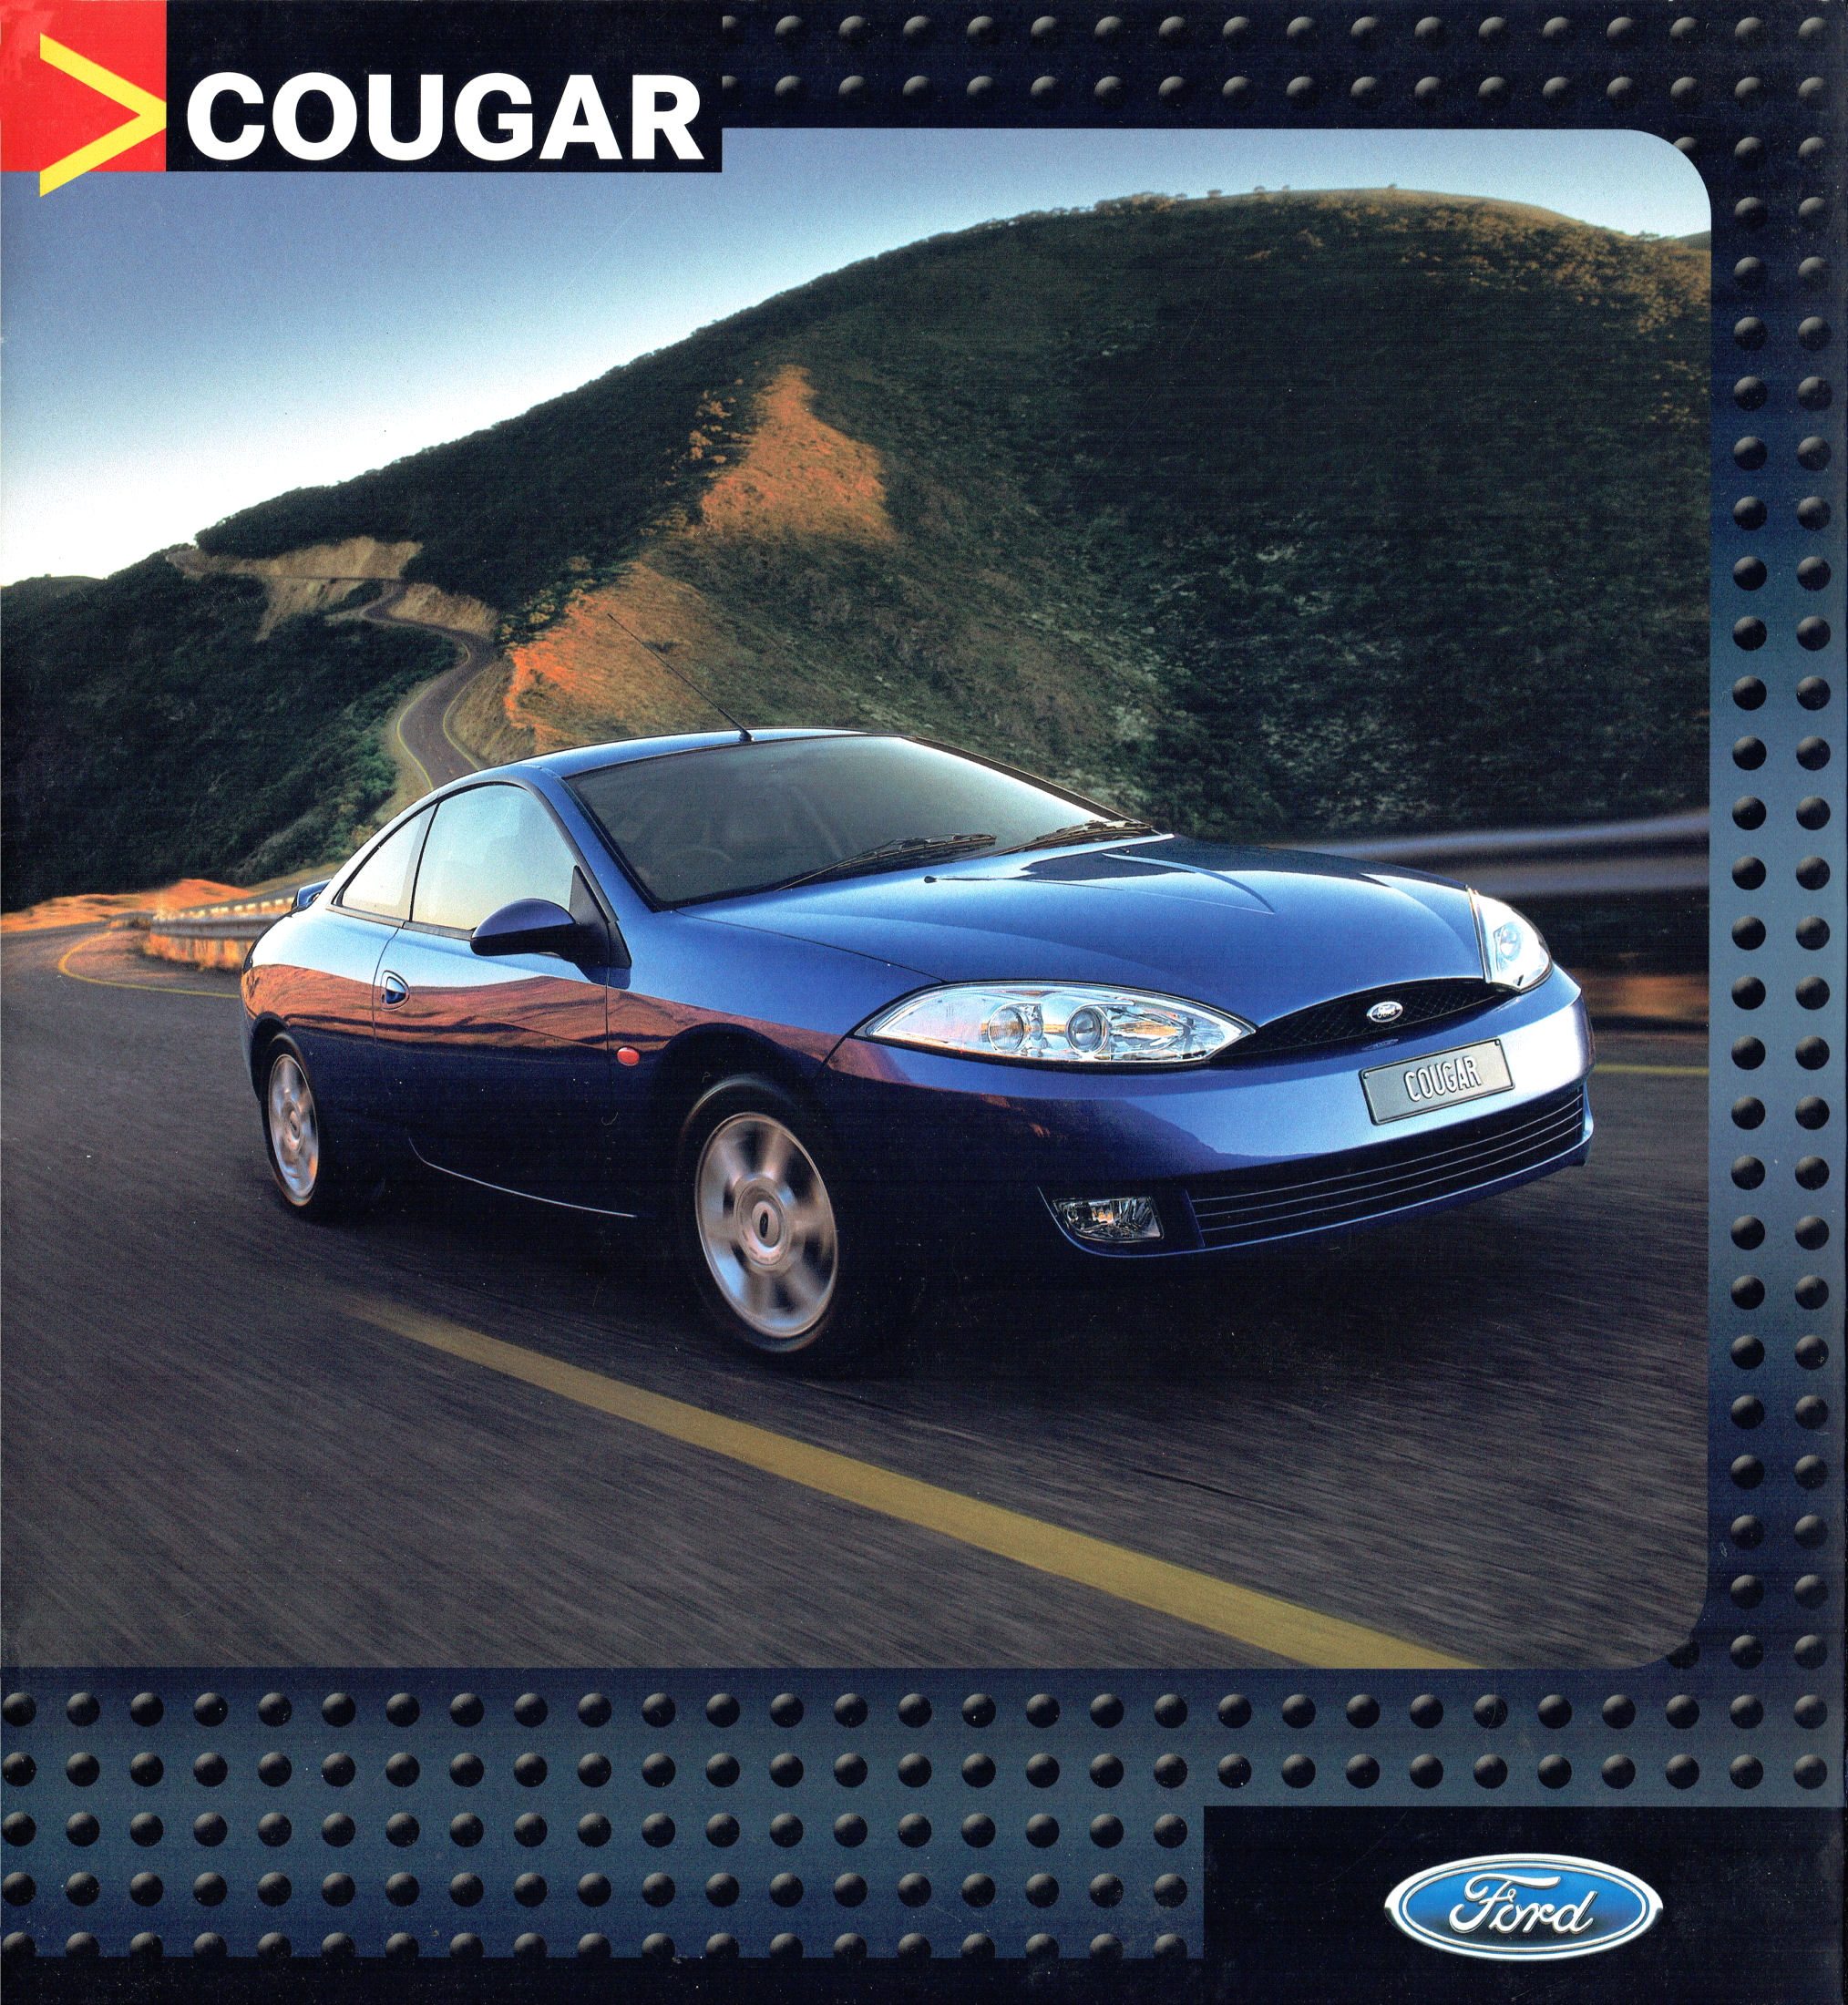 2001 Ford Cougar (Aus)-01